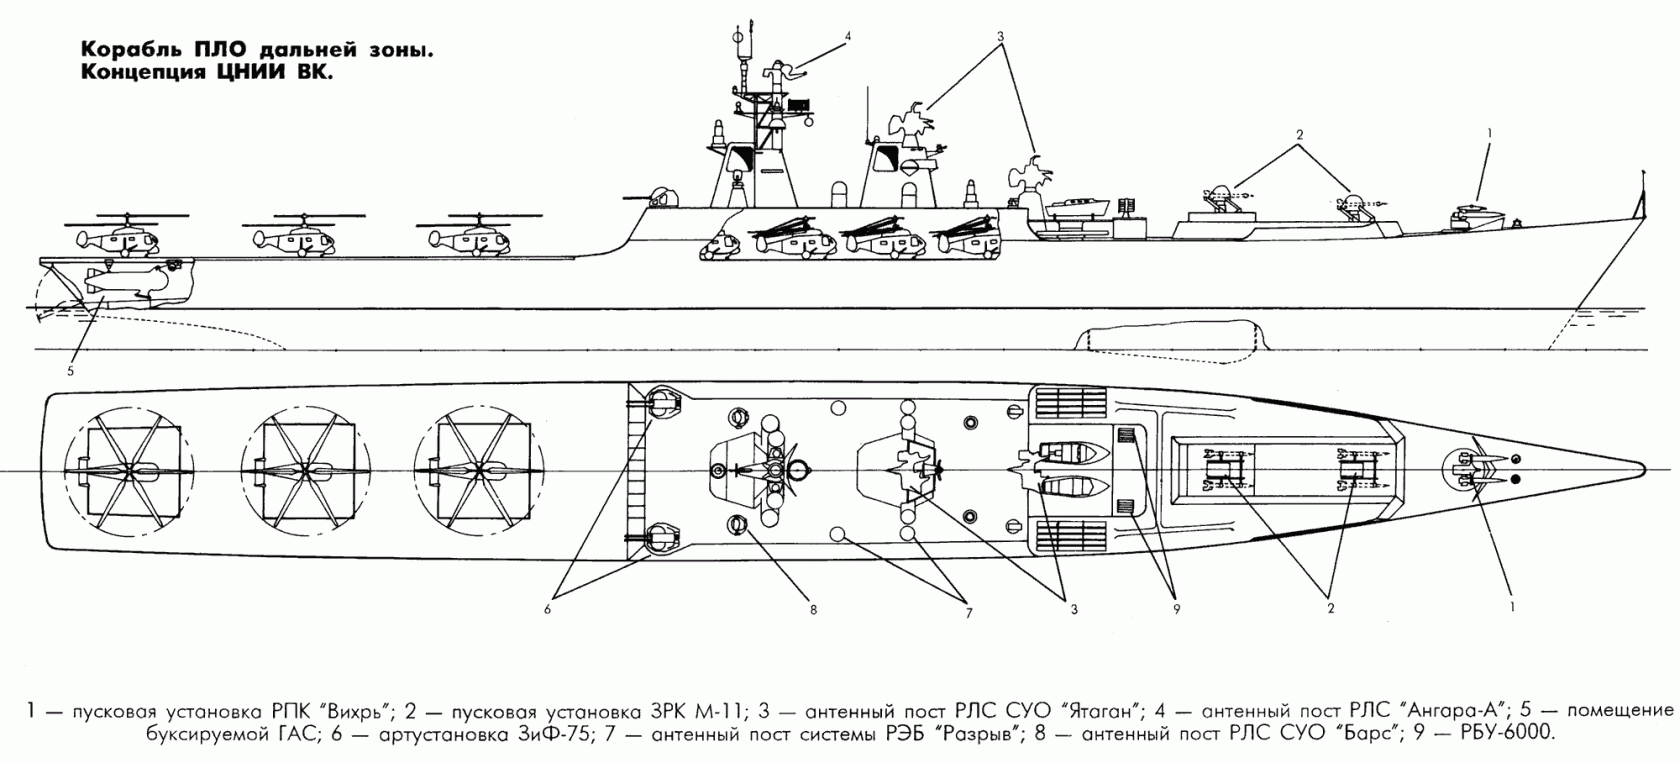 Проект 1143 «кречет» - тяжелые авианесущие крейсеры